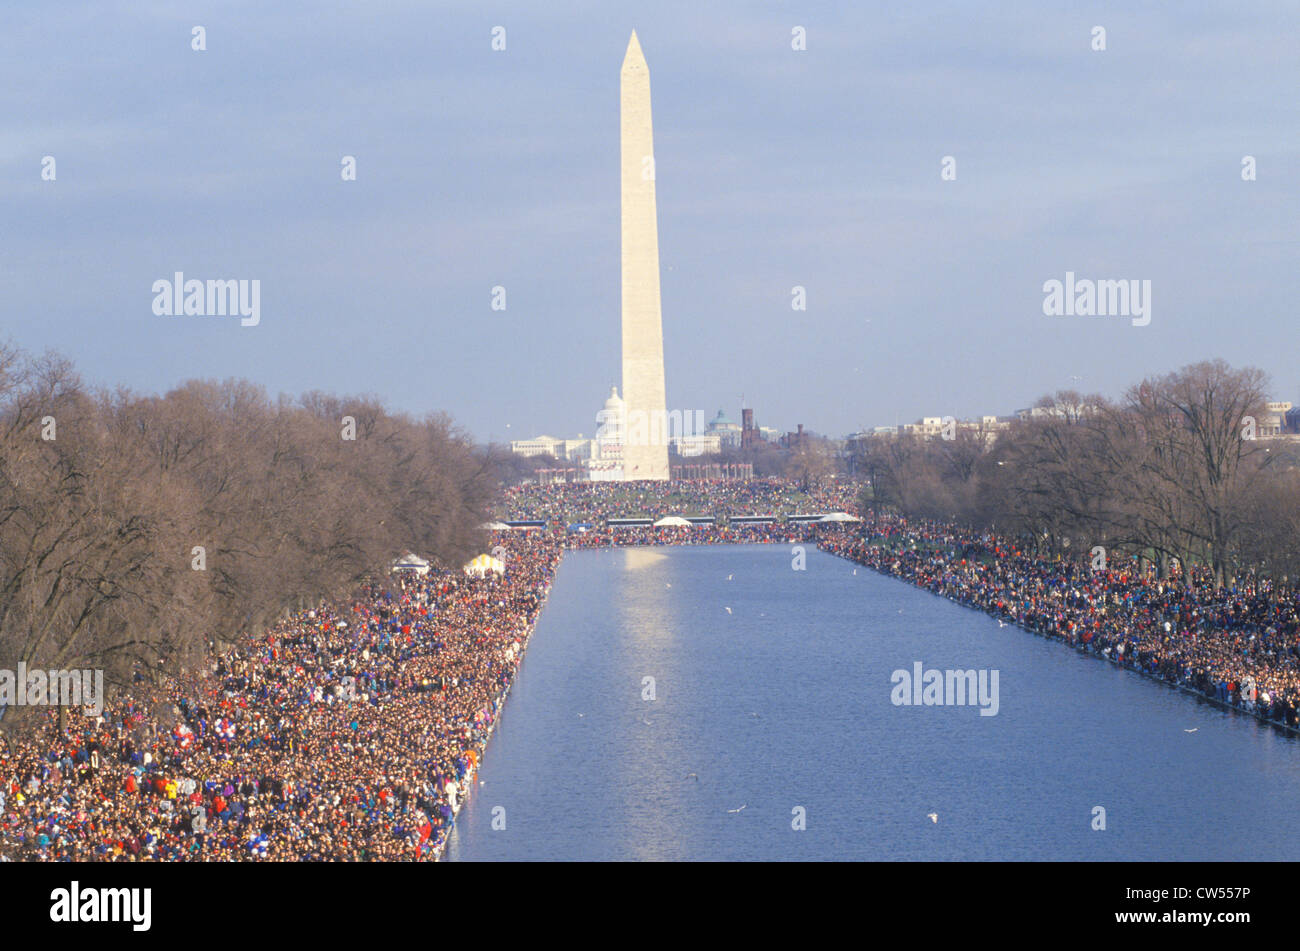 La foule lors de l'Inauguration du Président Clinton, le Monument National de Washington, Washington, D.C. Banque D'Images